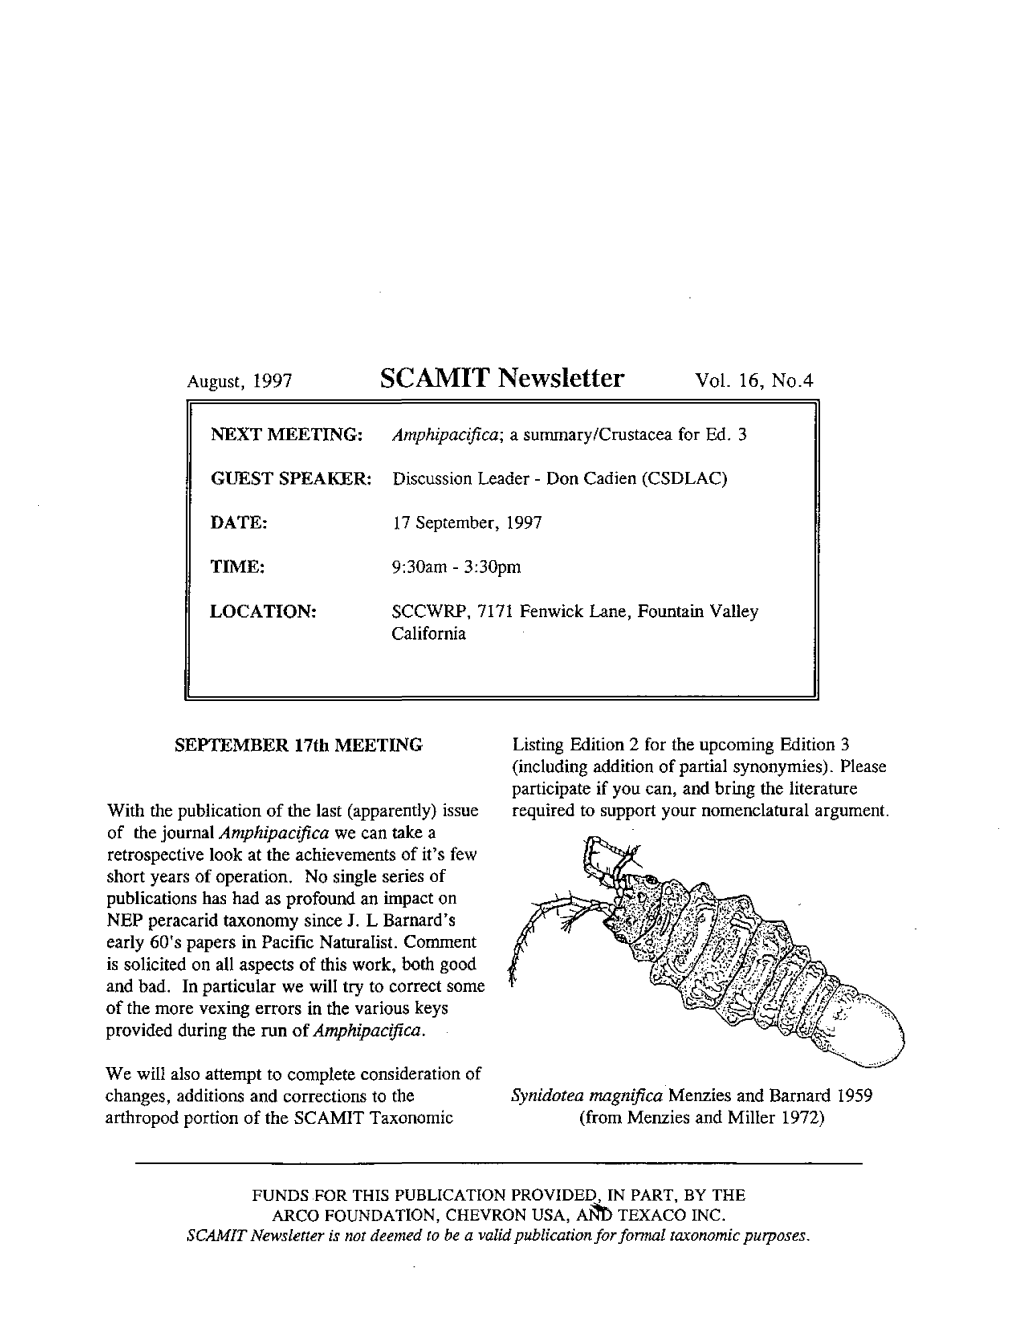 SCAMIT Newsletter Vol. 16 No. 4 1997 August